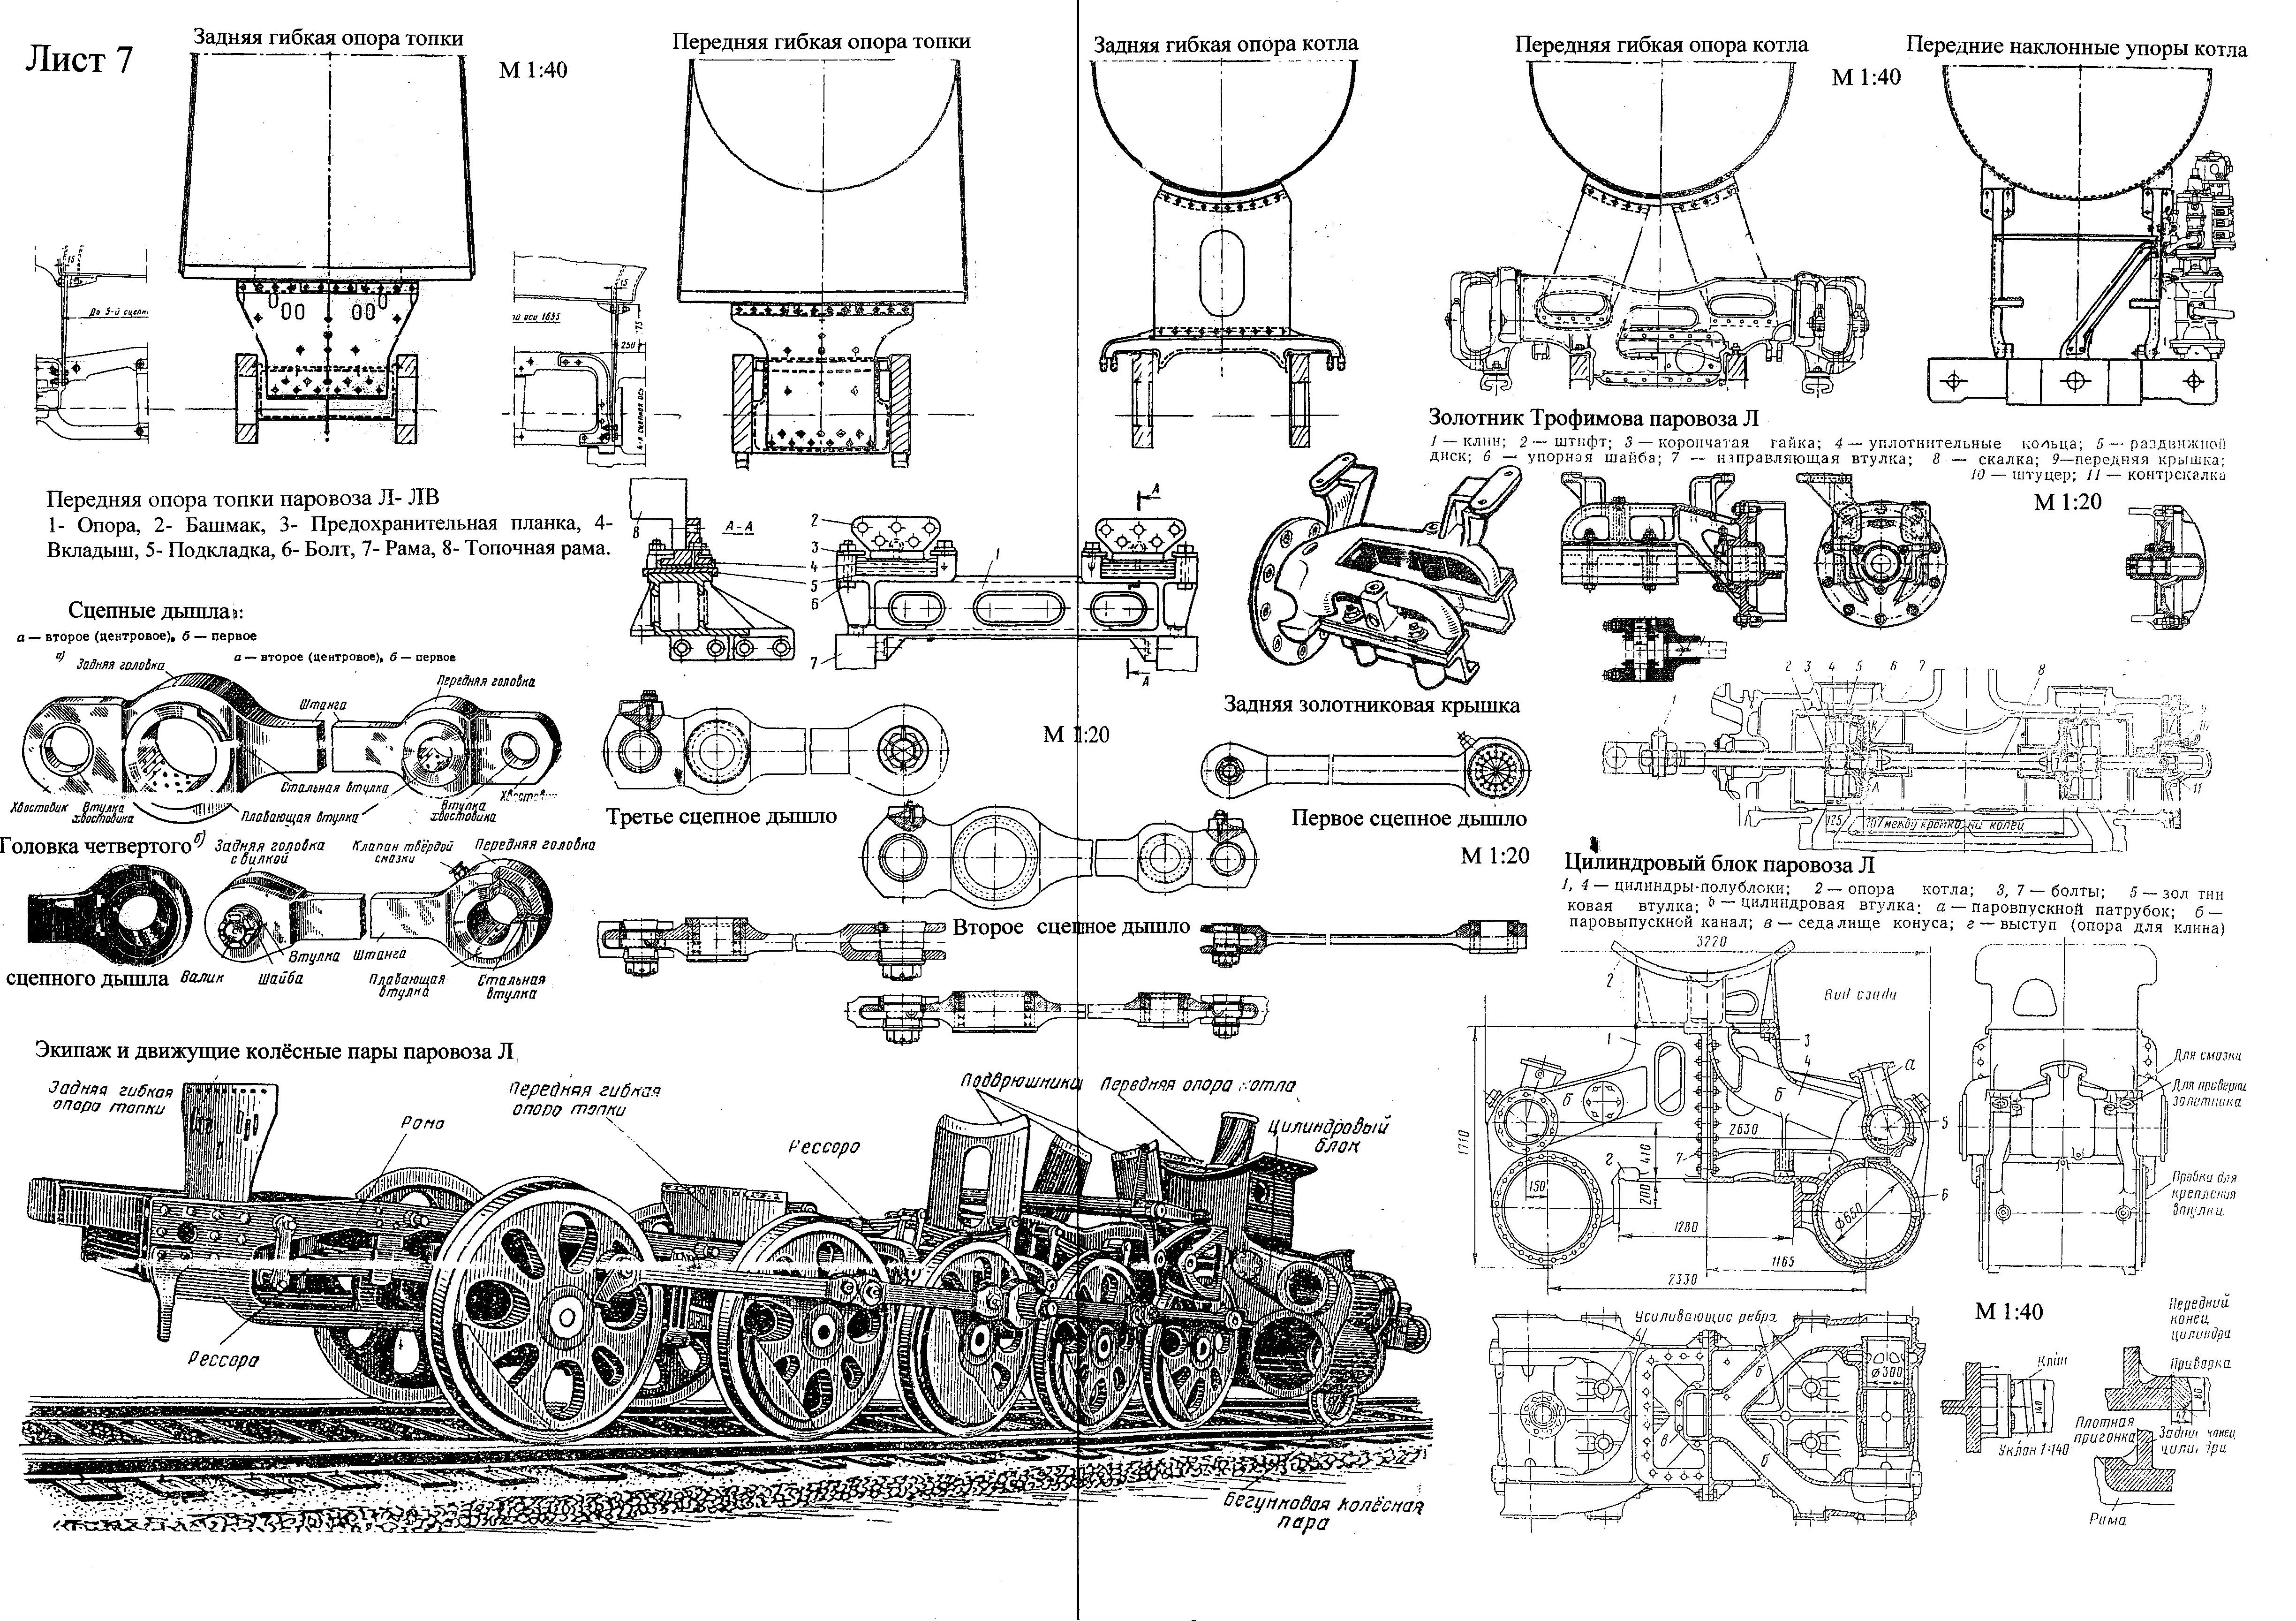 Нужны чертежи модели паровоза BR 18 - Форум Trainsim